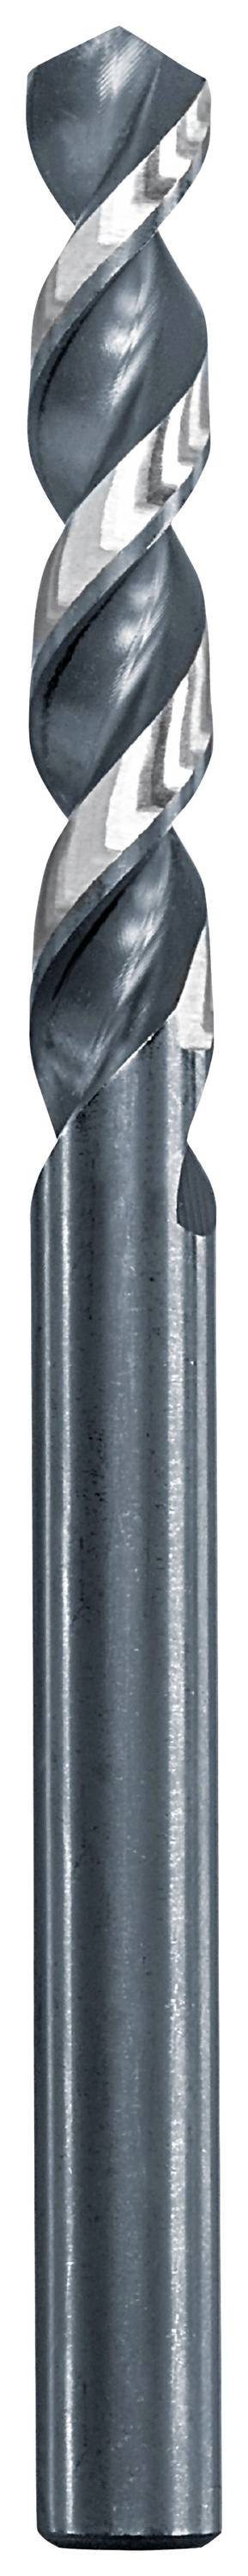 KWB 258710 Metall-Spiralbohrer 11 mm Gesamtlänge 142 mm 1 St.